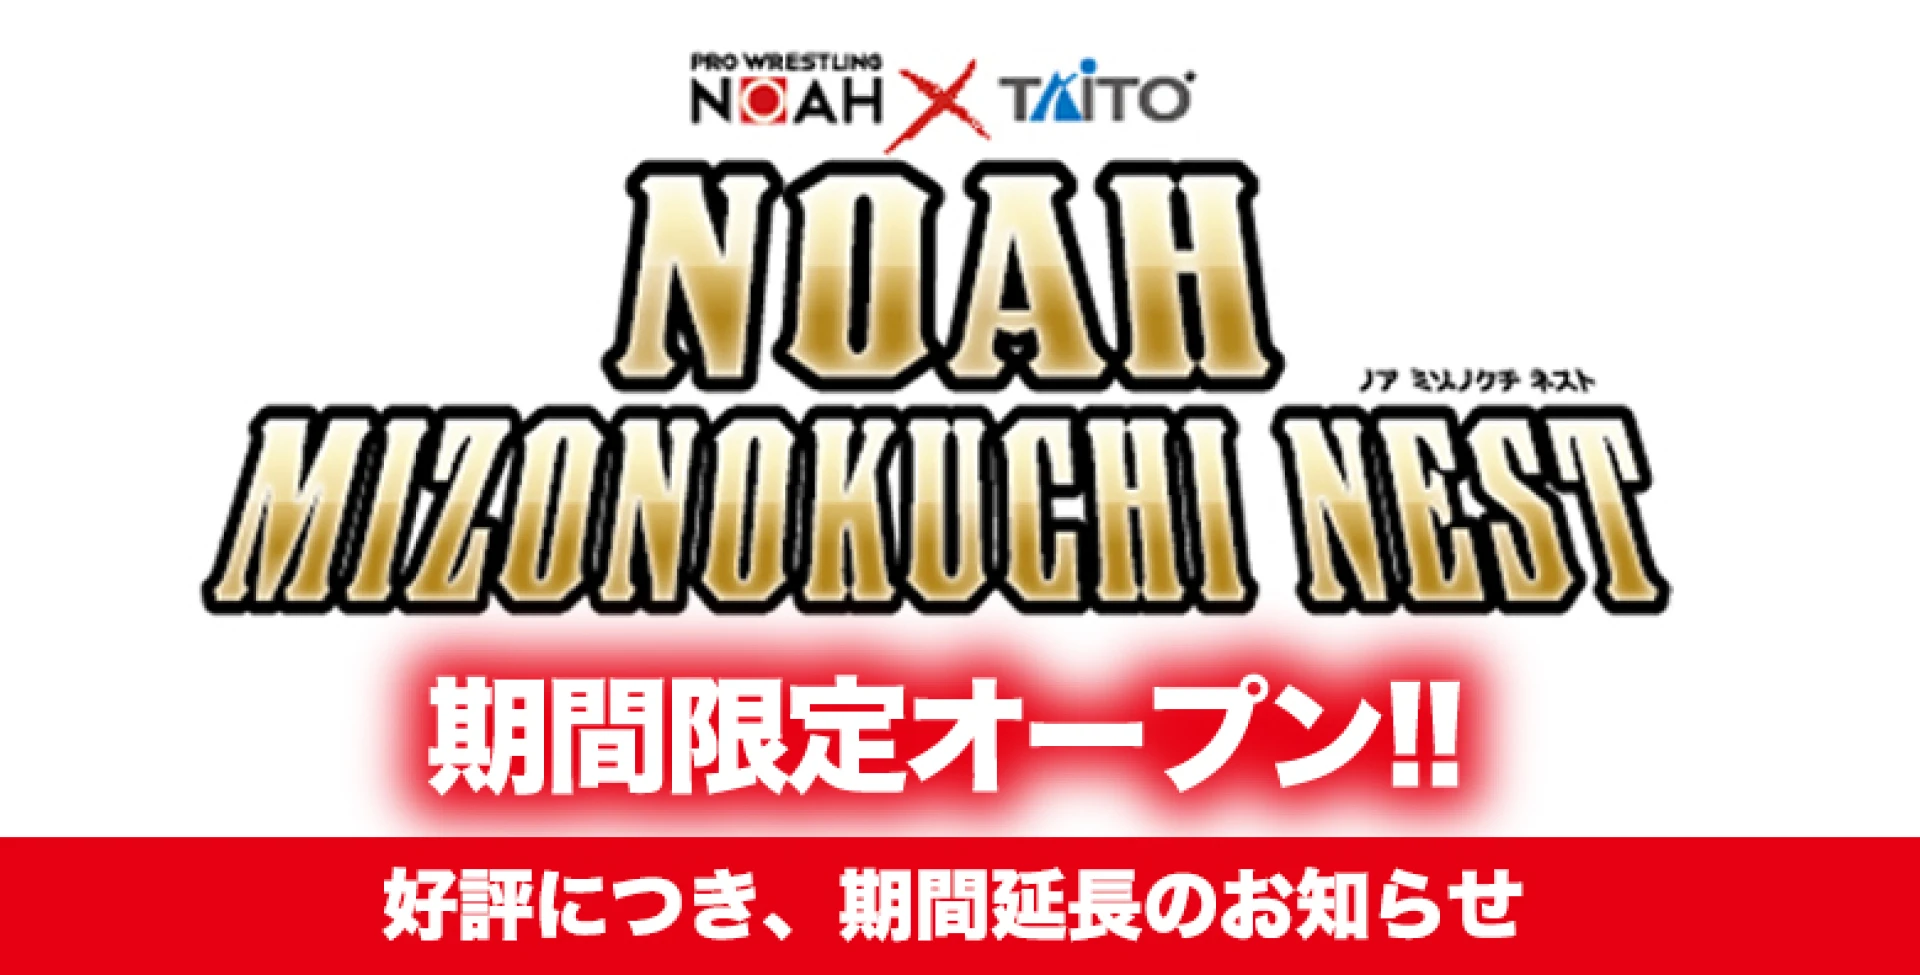 【緊急決定!】「NOAH × TAITO」コラボコーナー 期間延長のお知らせ